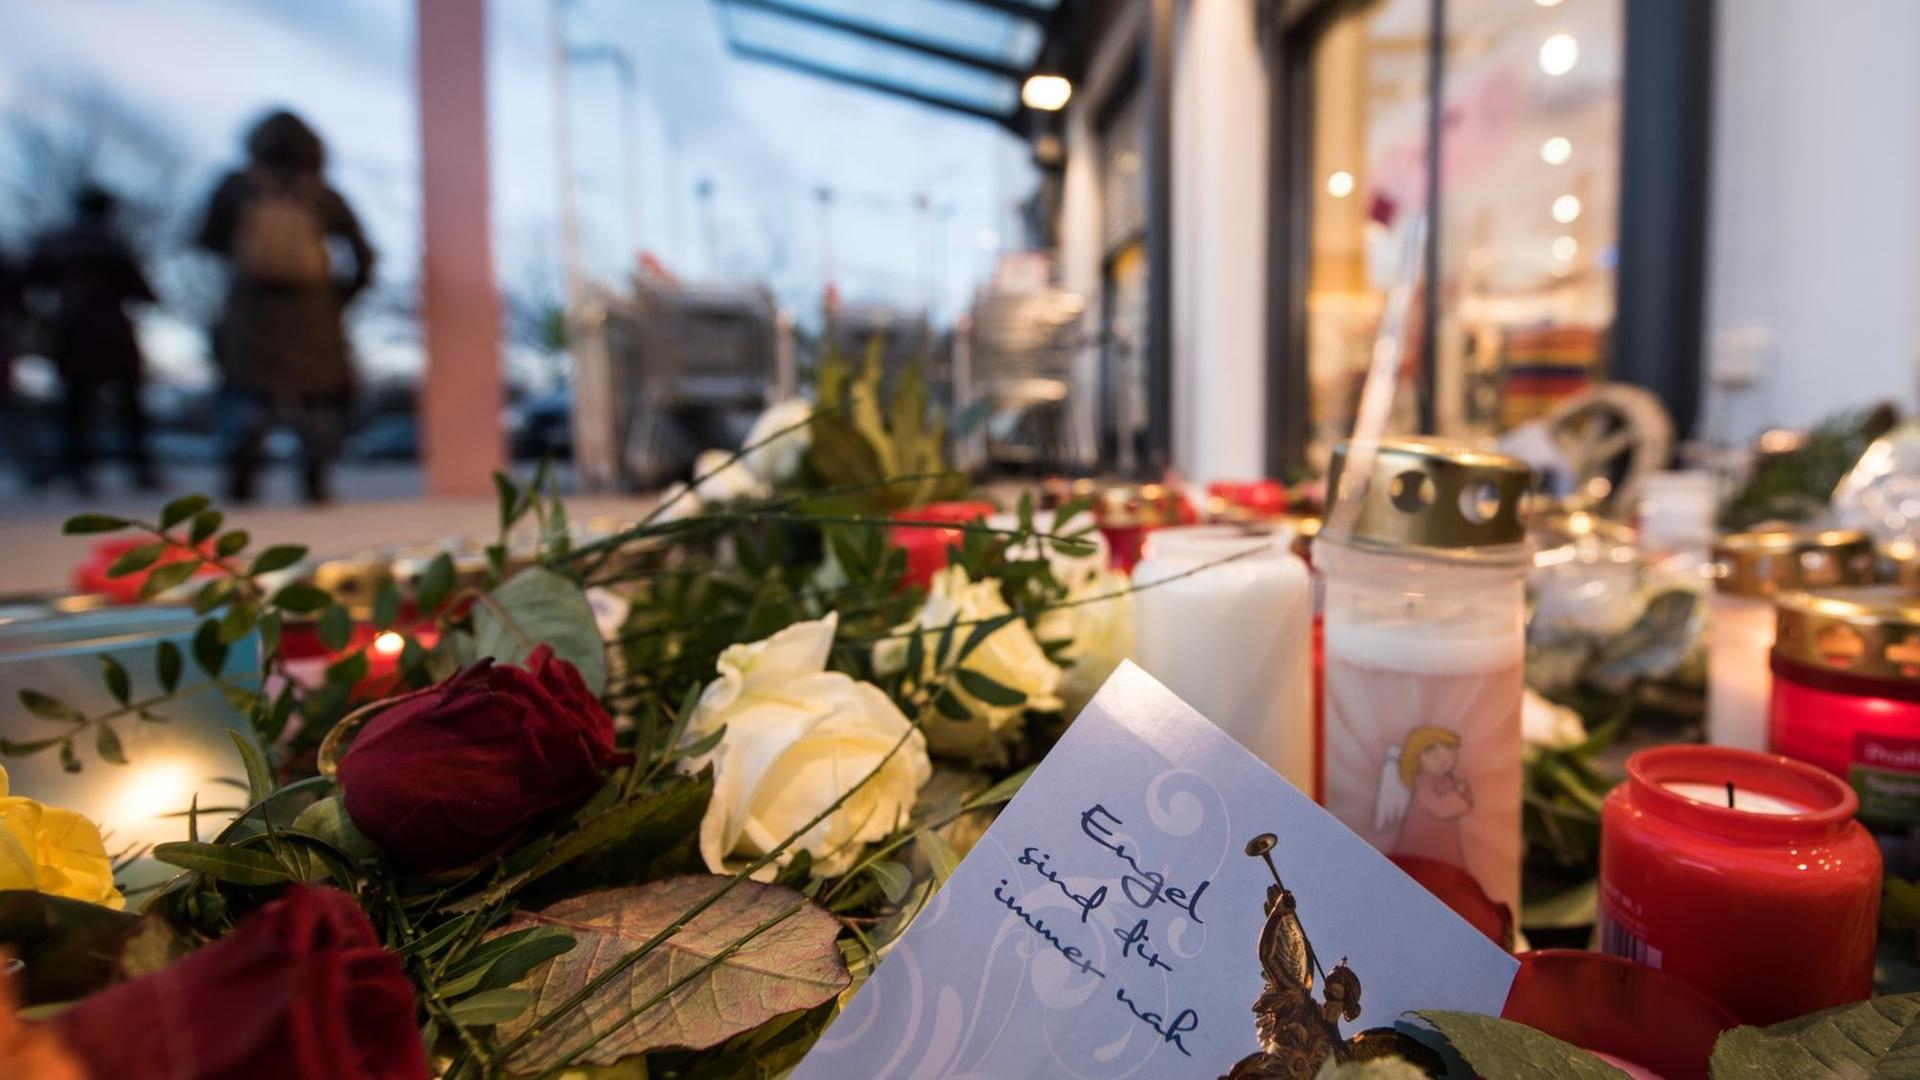 Ein Zettel mit der Aufschrift "Engel sind für immer nah" liegt am 28.12.2017 vor dem Drogeriemarkt in Kandel zwischen abgelegten Blumen und Kerzen